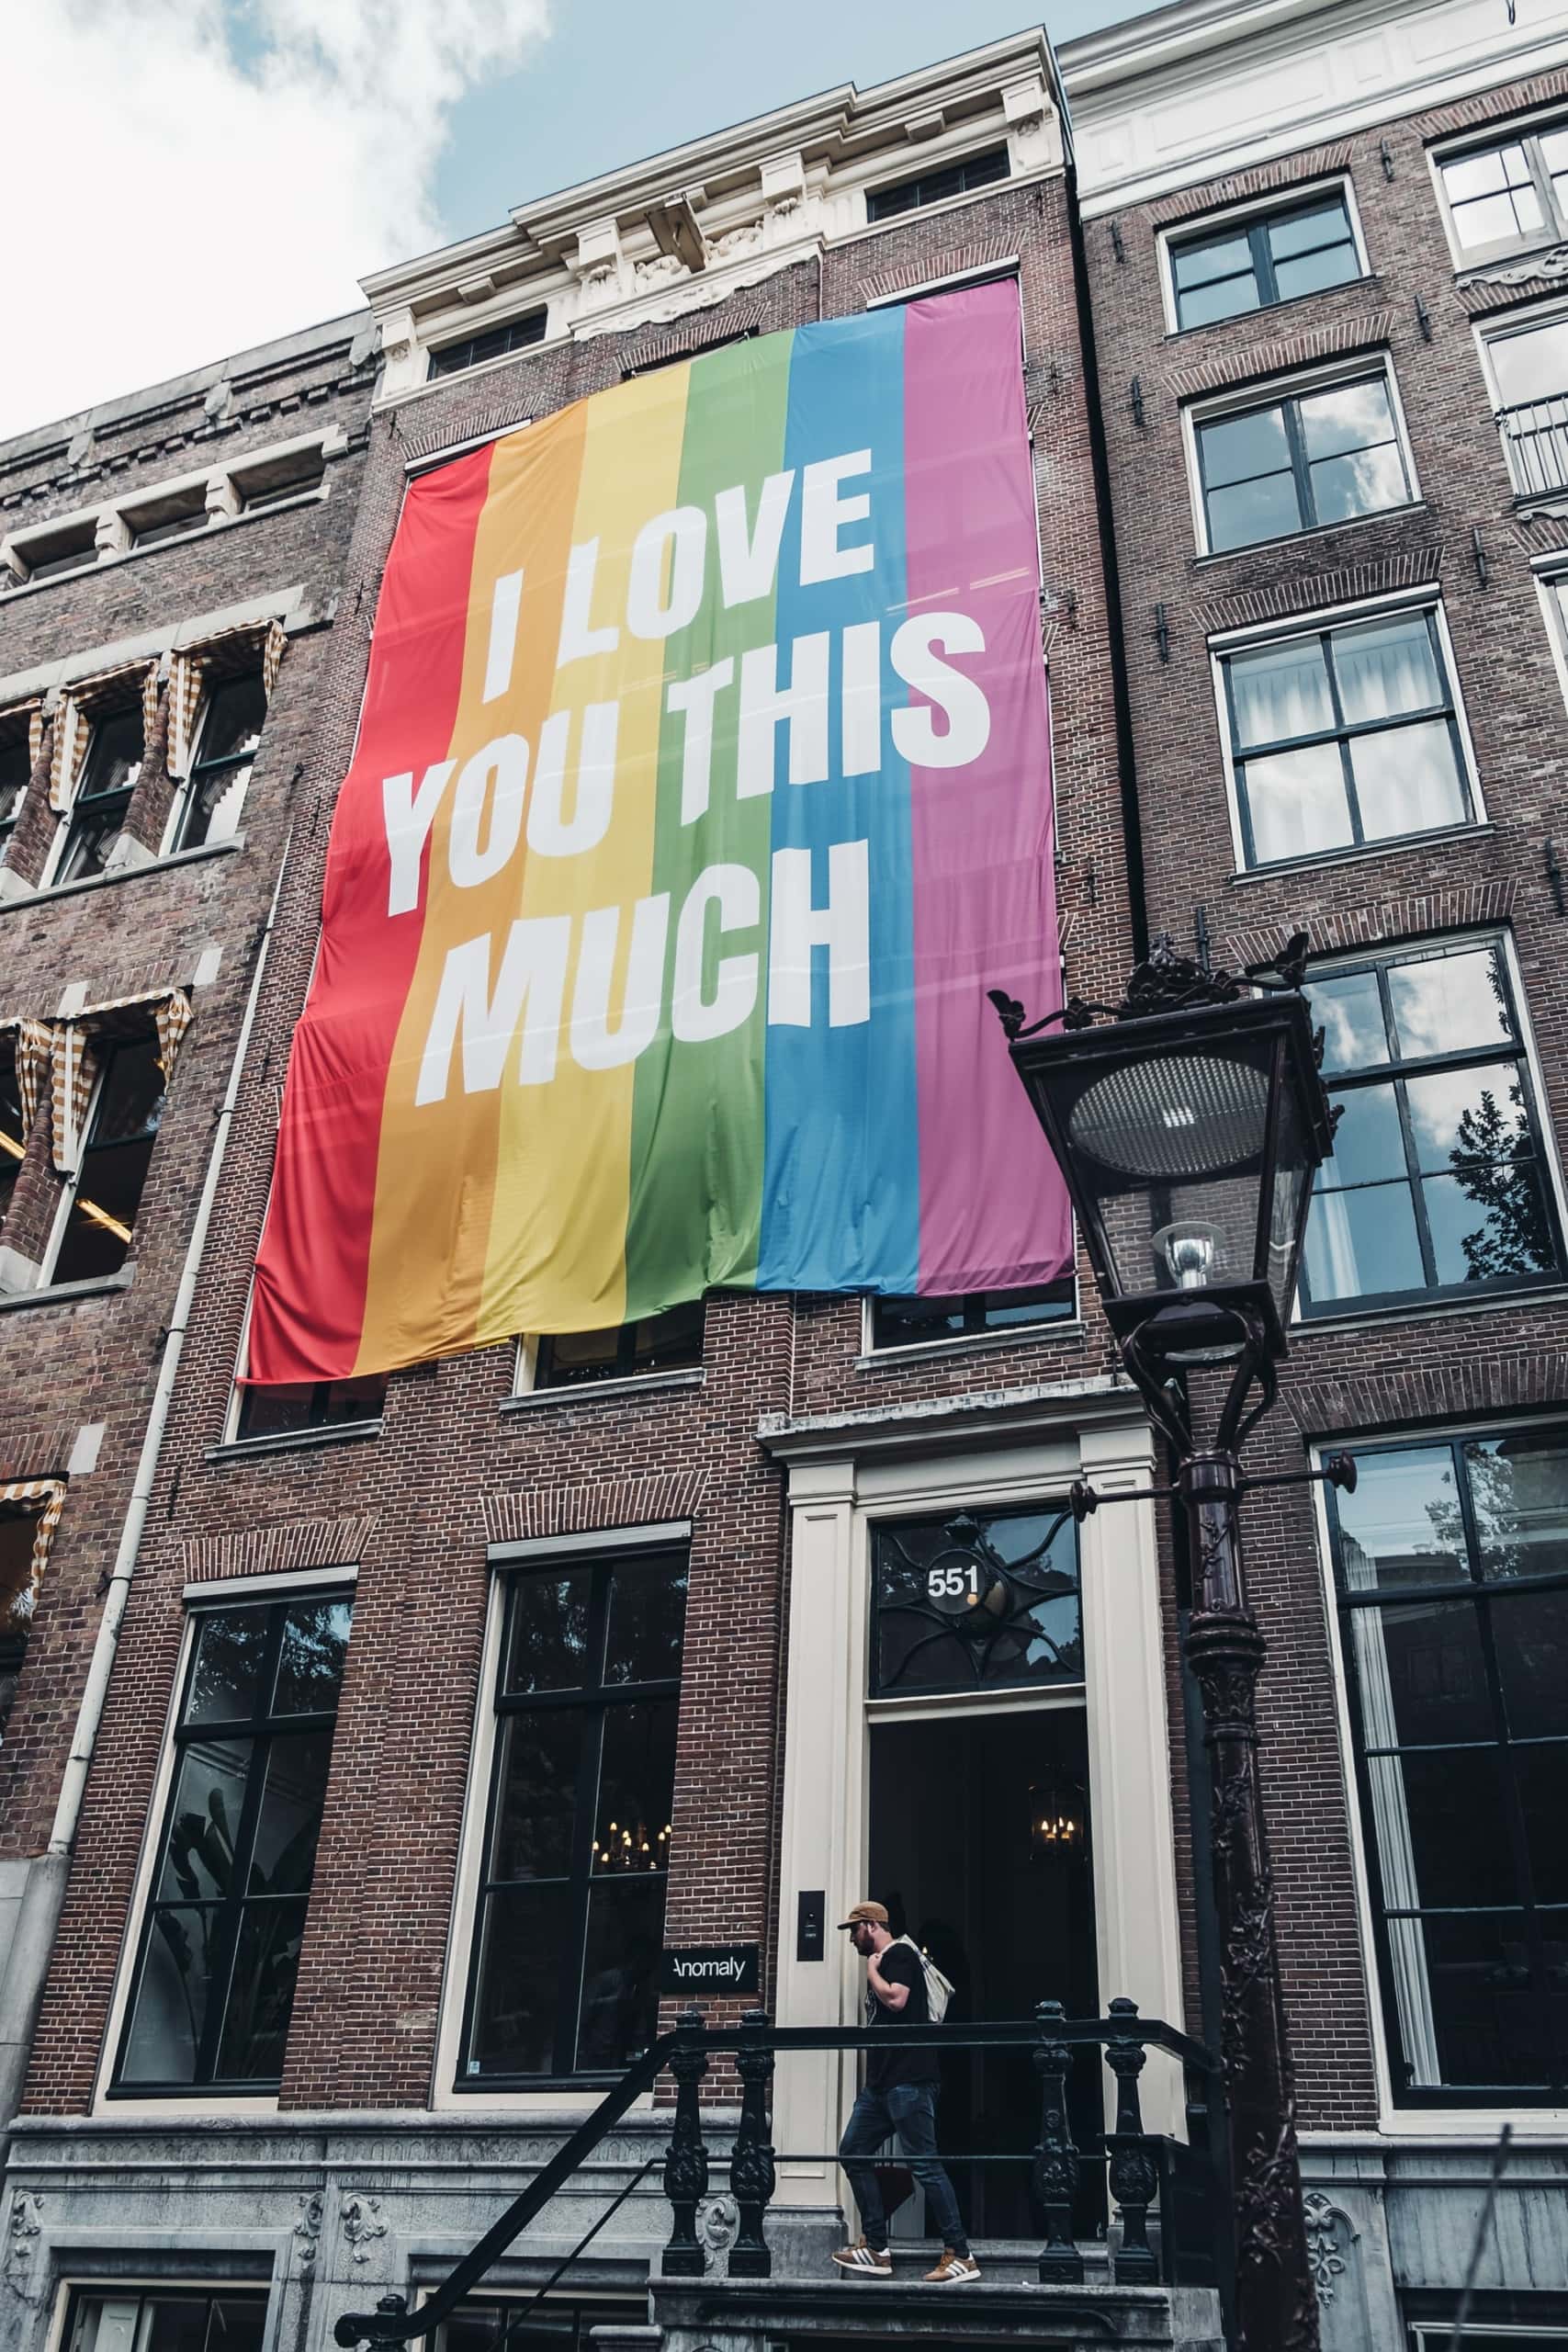 Regenbogen-Fahne mit der Aufschrift "I love you this much", das ein Haus in Amsterdam ziert 